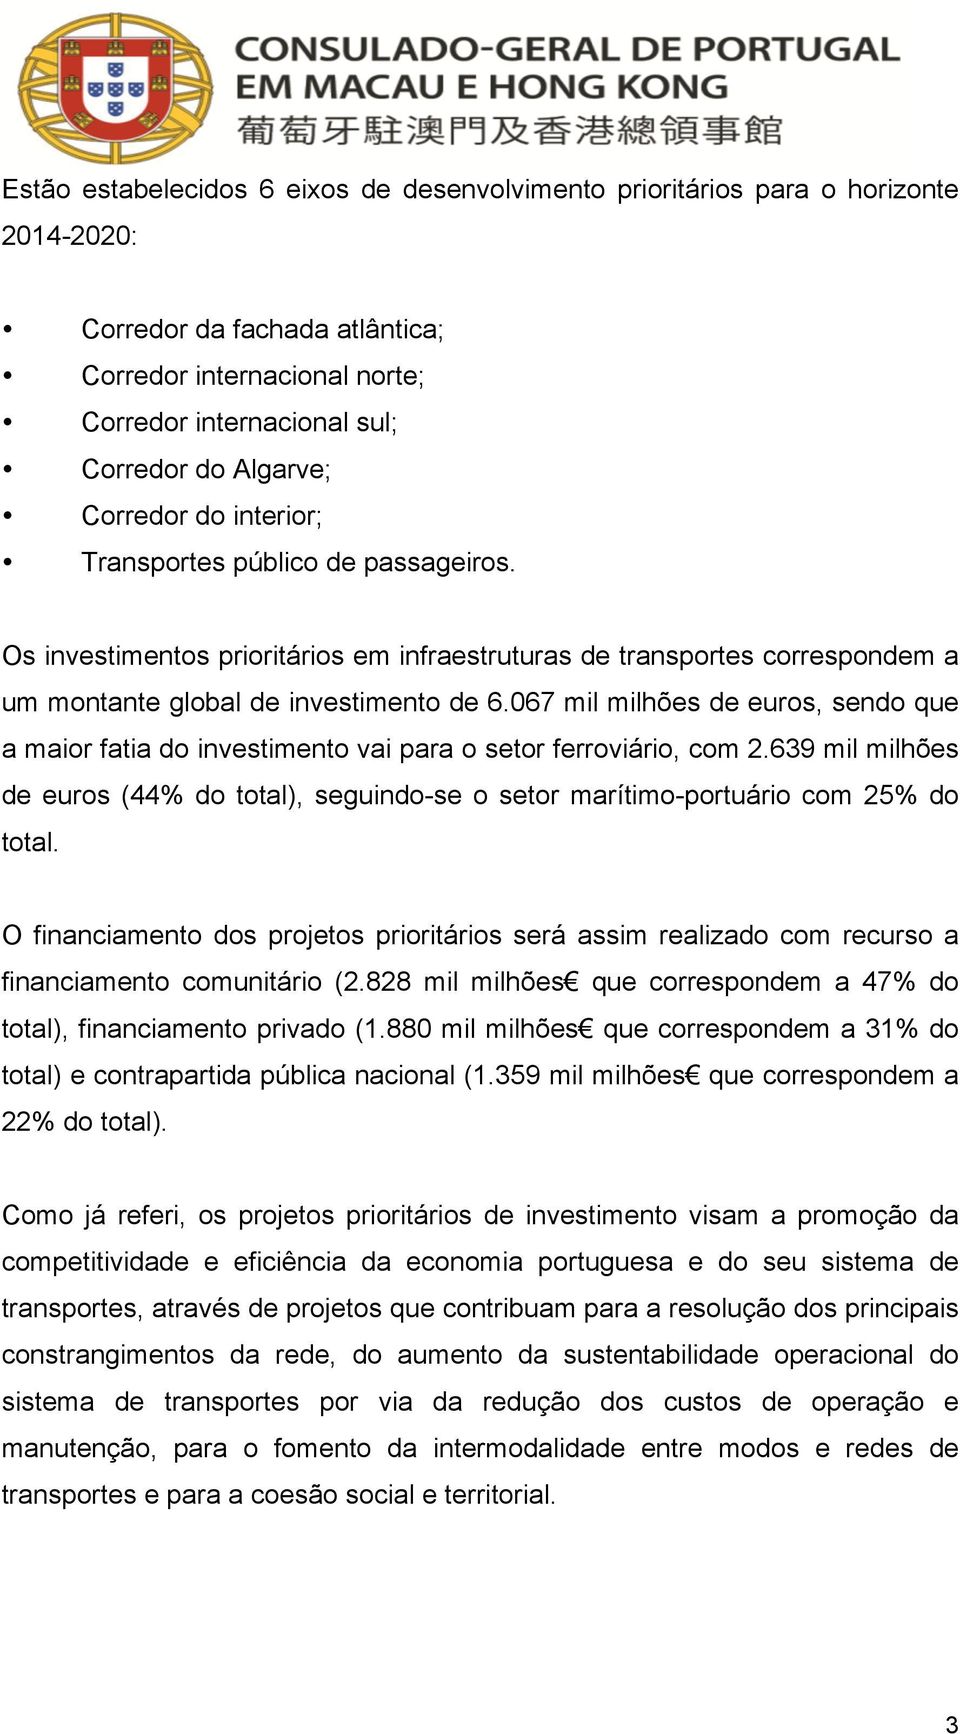 067 mil milhões de euros, sendo que a maior fatia do investimento vai para o setor ferroviário, com 2.639 mil milhões de euros (44% do total), seguindo-se o setor marítimo-portuário com 25% do total.